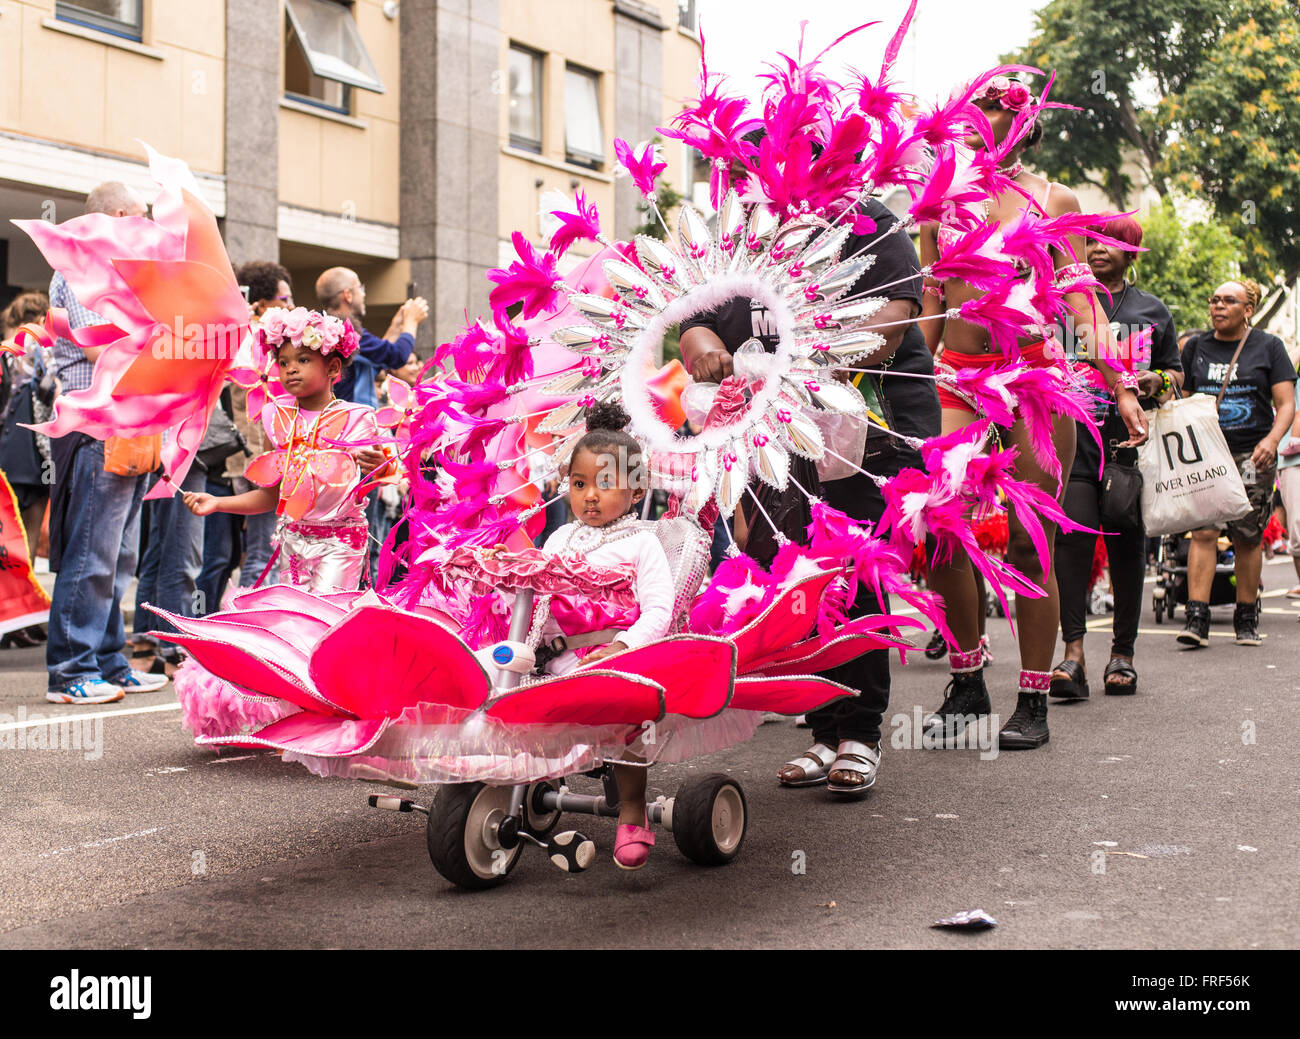 Mädchen auf einer phantastischen gekleidet Trike während der Notting Hill Carnival street parade, einer der größten Street Festival in Europa Stockfoto